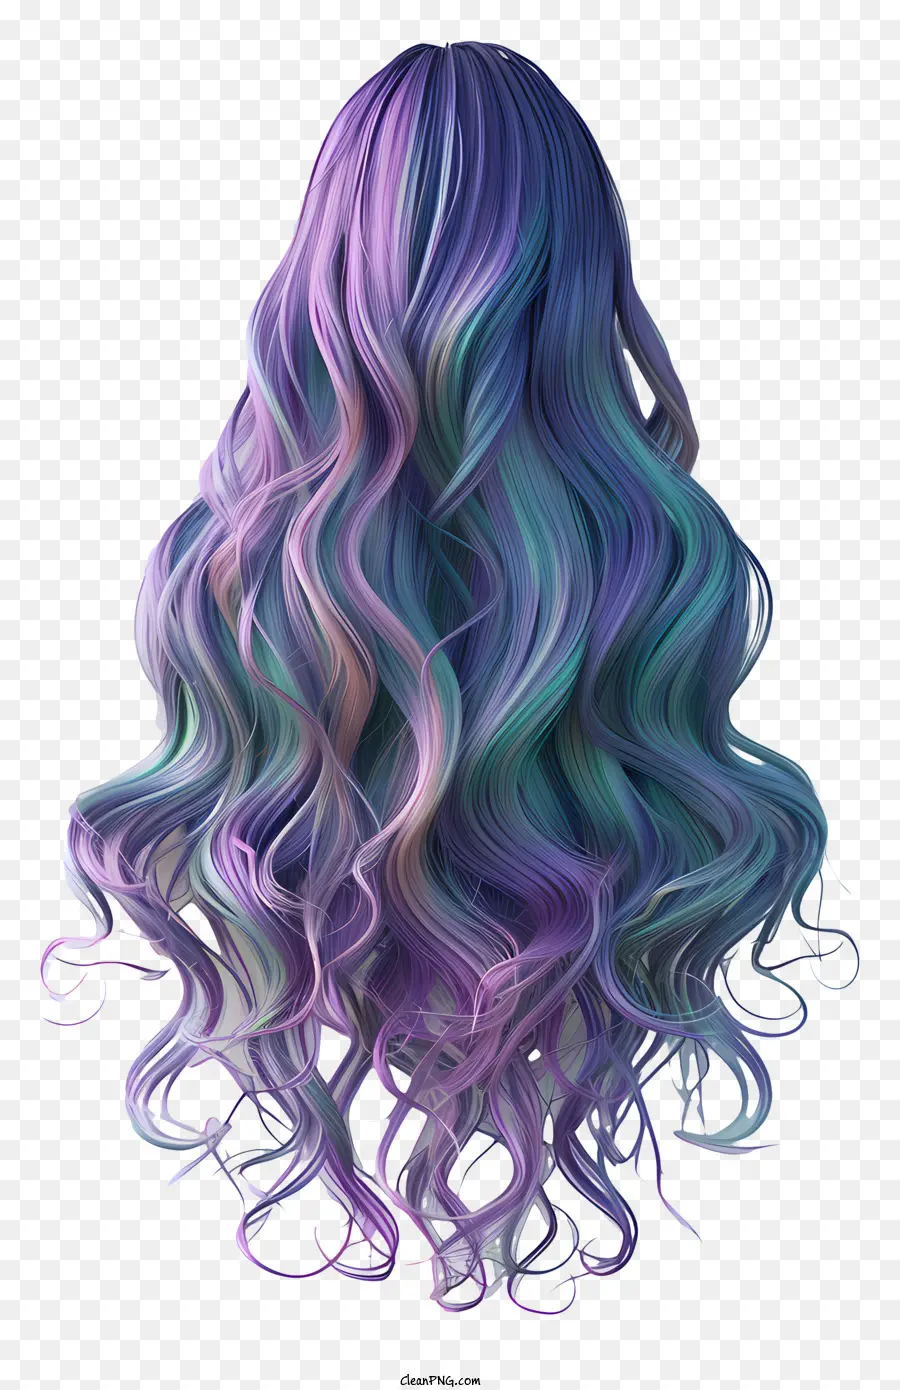 tóc dài tóc giả tóc dài lượn sóng tóc xoăn tóc teal - Người phụ nữ có mái tóc đầy màu sắc, lượn sóng trong nền tối